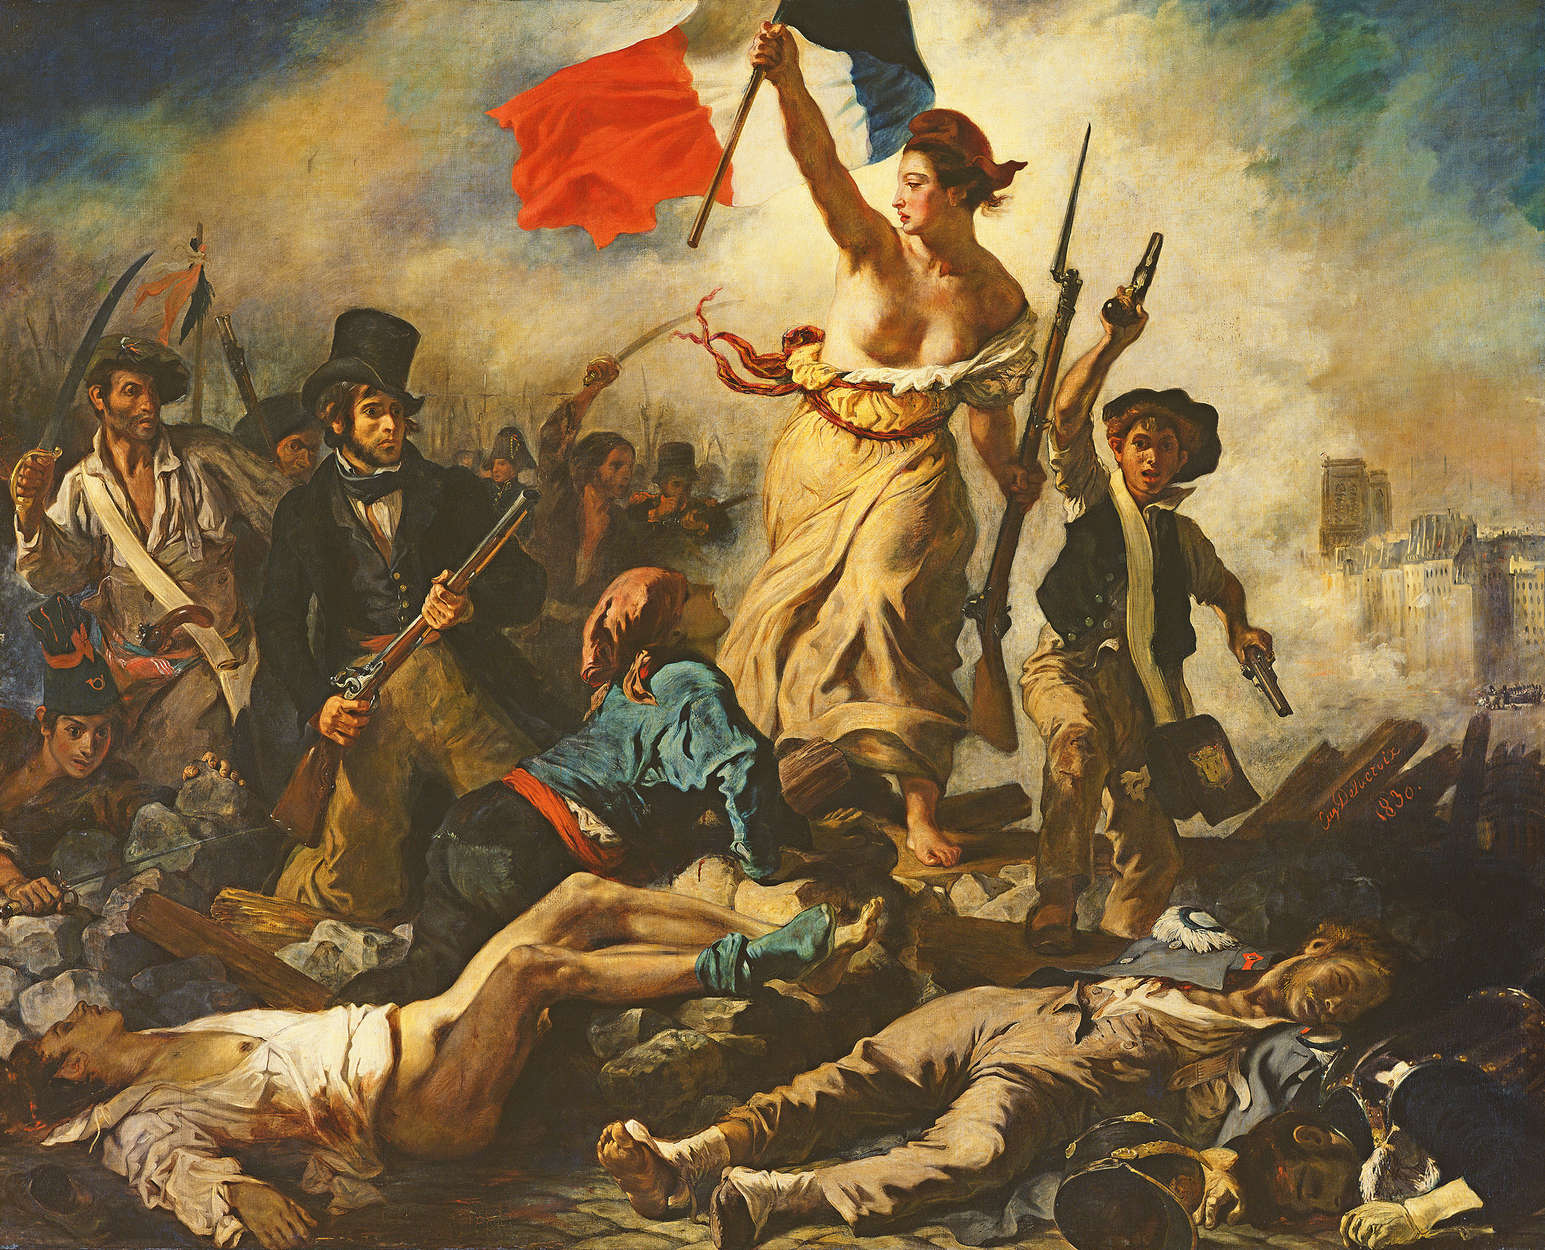             Vrijheid leidt het volk" muurschildering van Eugène Delacroix
        